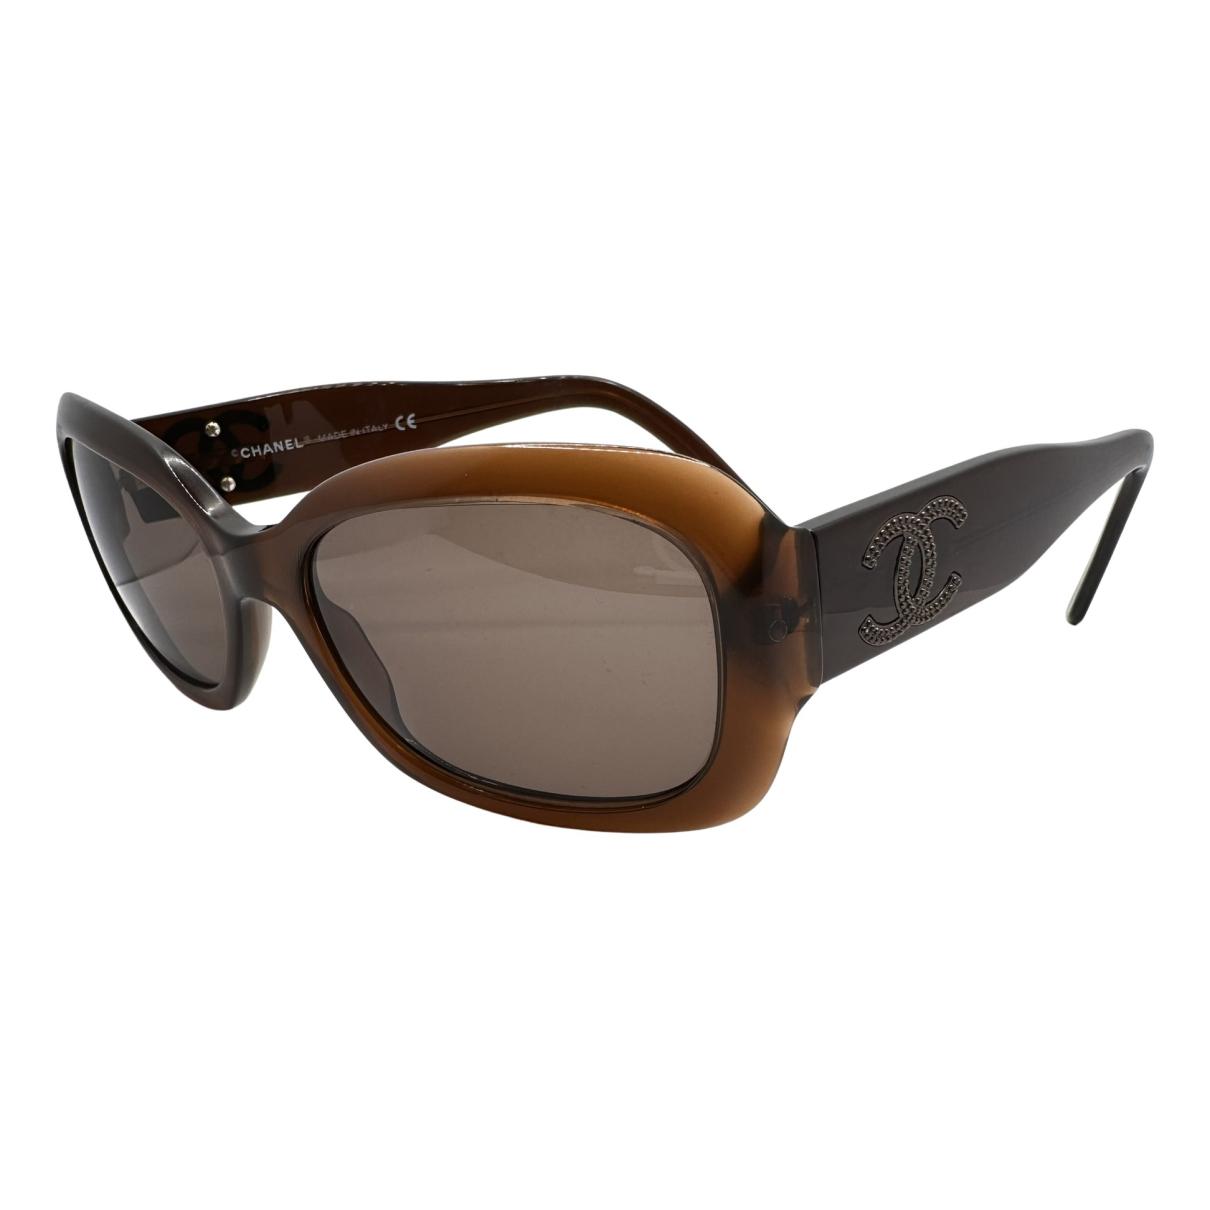 Sunglasses Chanel Brown in Plastic - 33127366